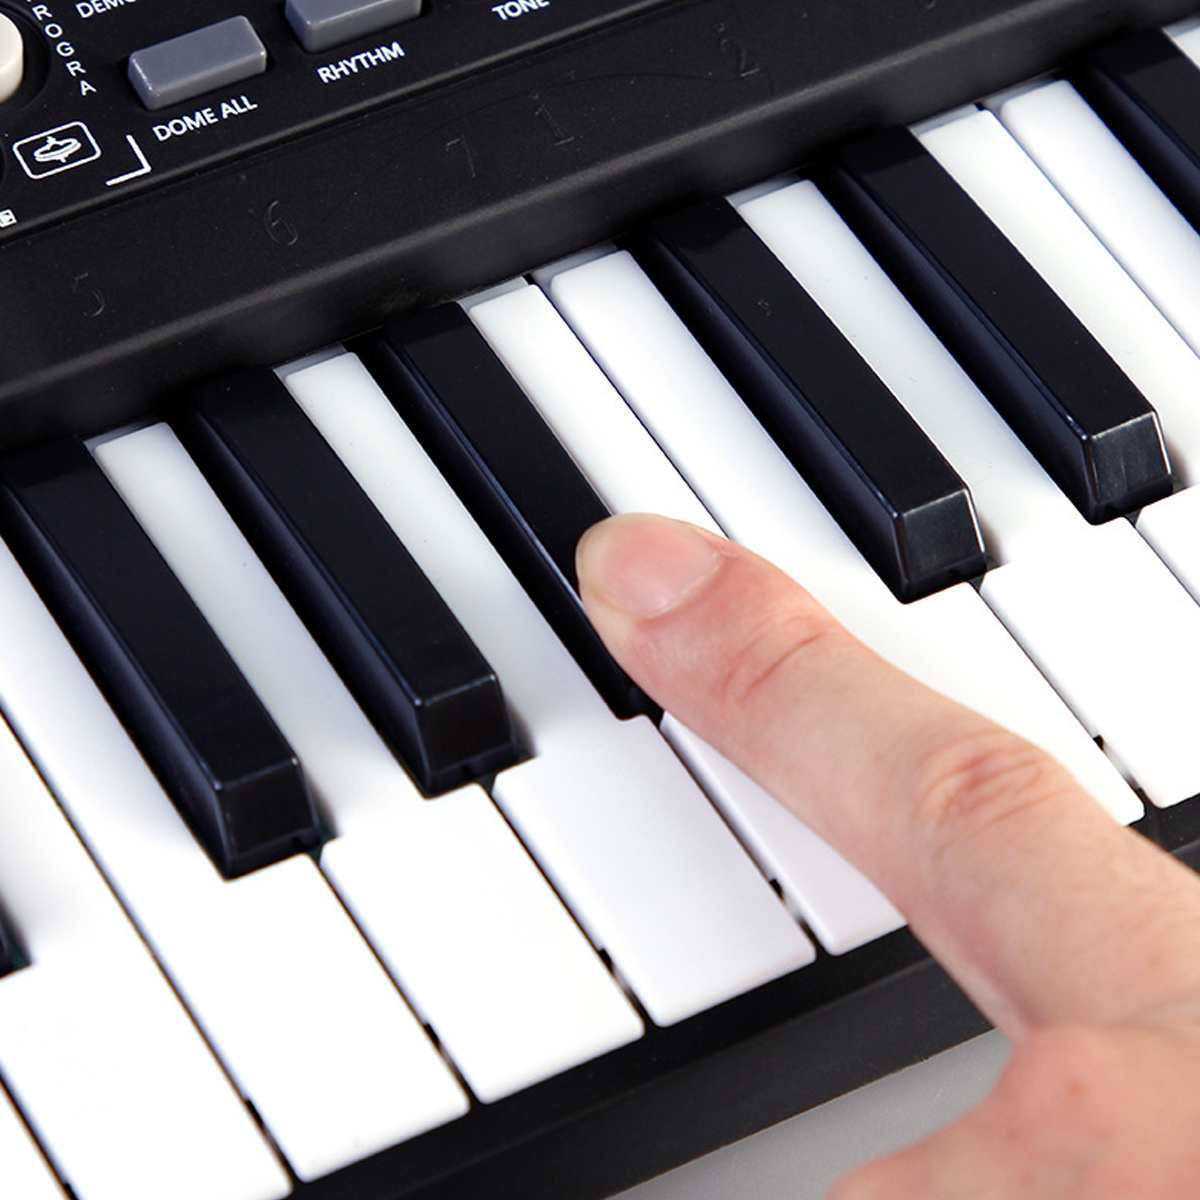 61 nøgle digitalt elektronisk infantil keyboard klaverorgel med mikrofon / musikstativ chirdren keyboardmusik